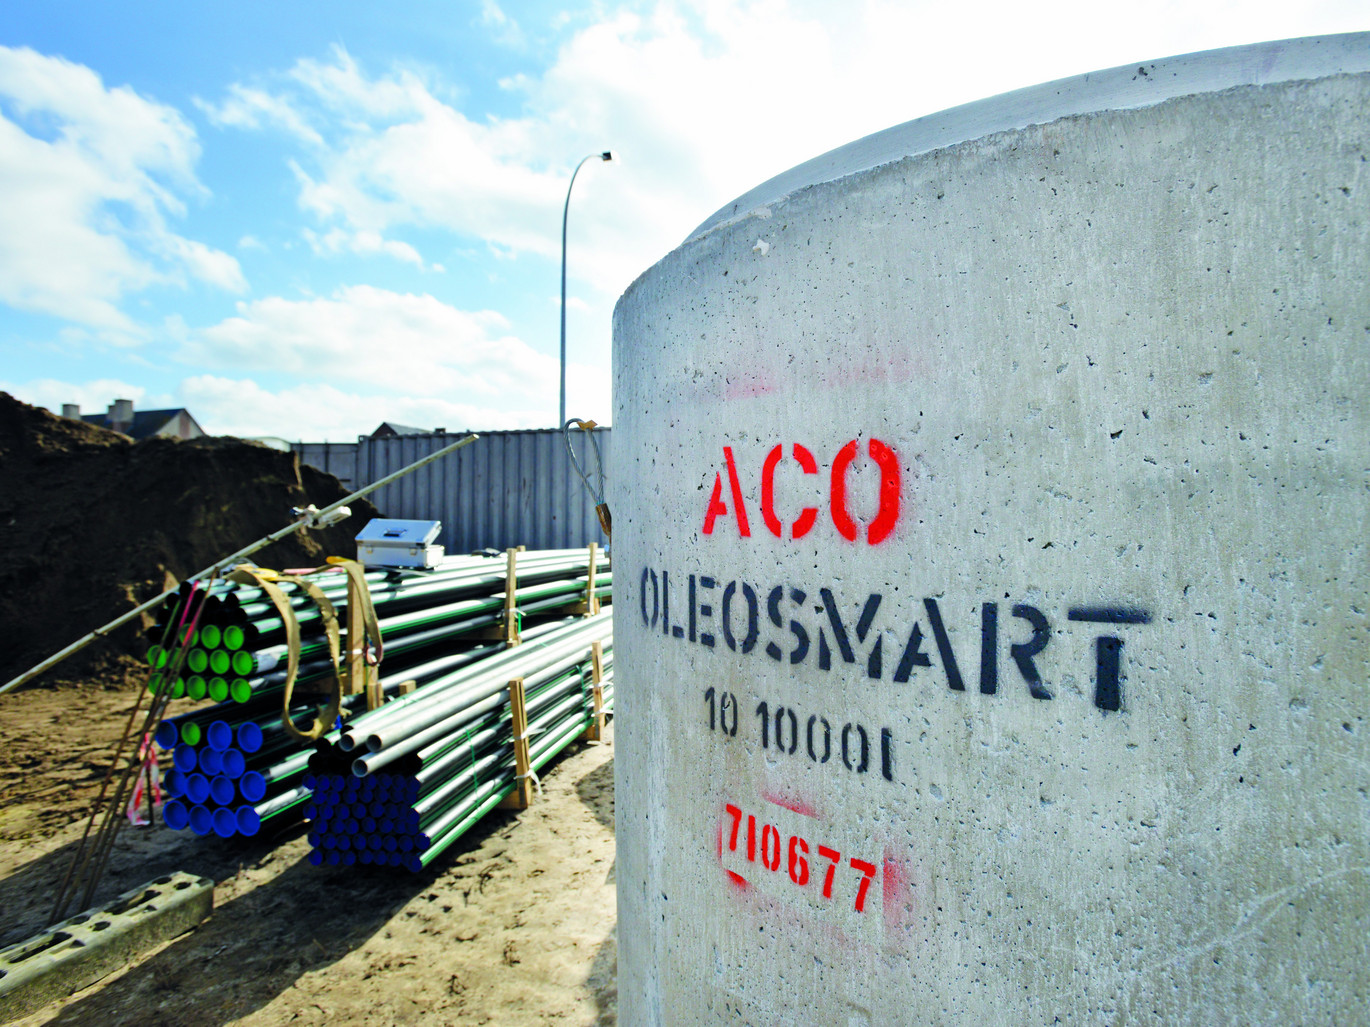 ACO Oleosmart Mechelen 2